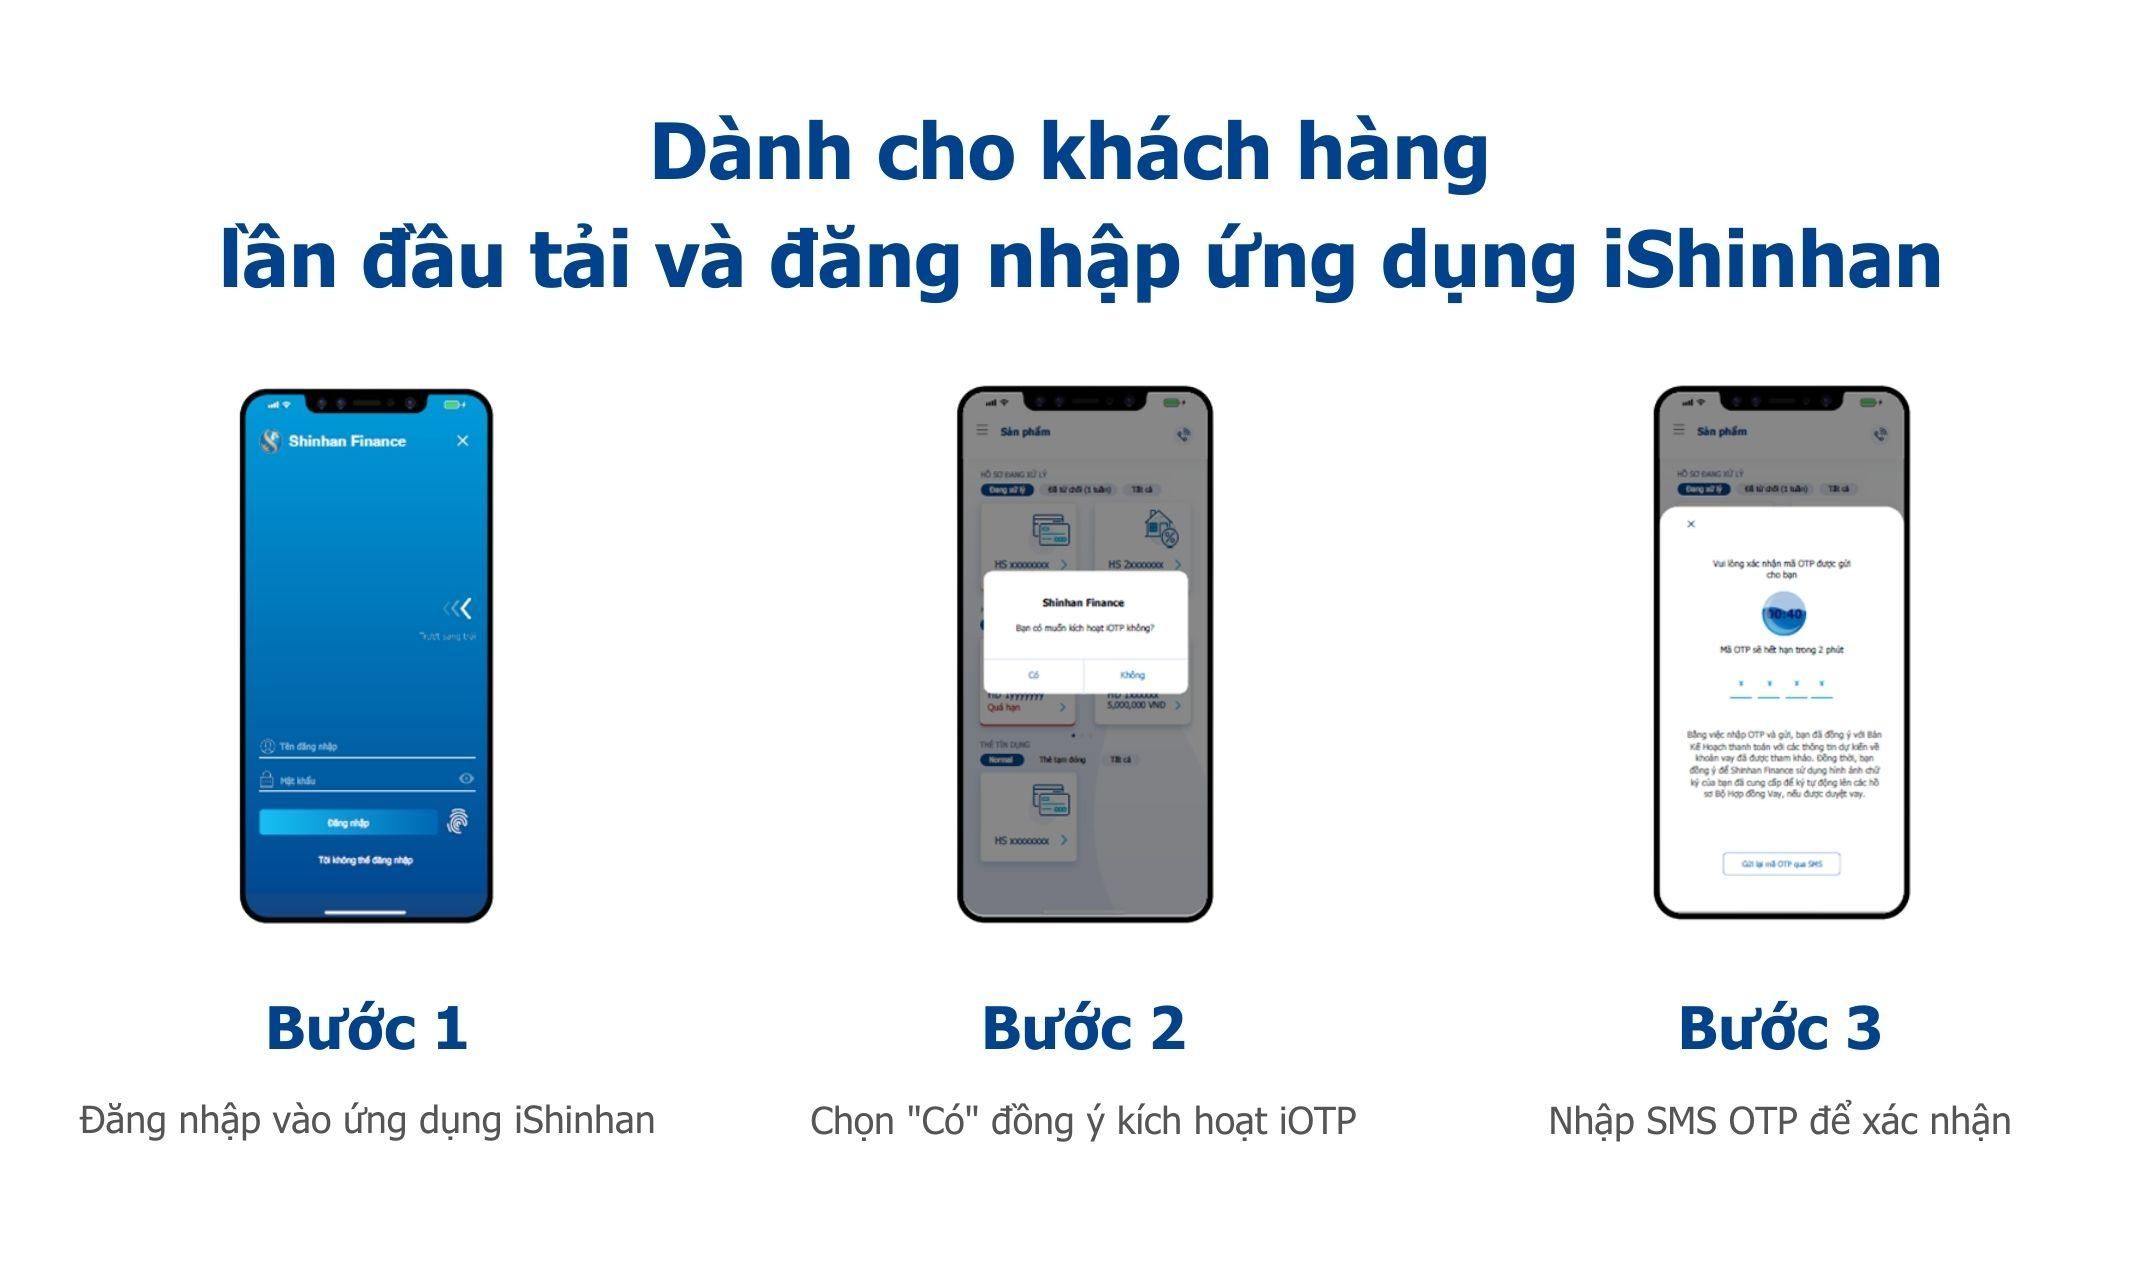 Dành cho khách hàng lần đầu tải và đăng nhập ứng dụng iShinhan